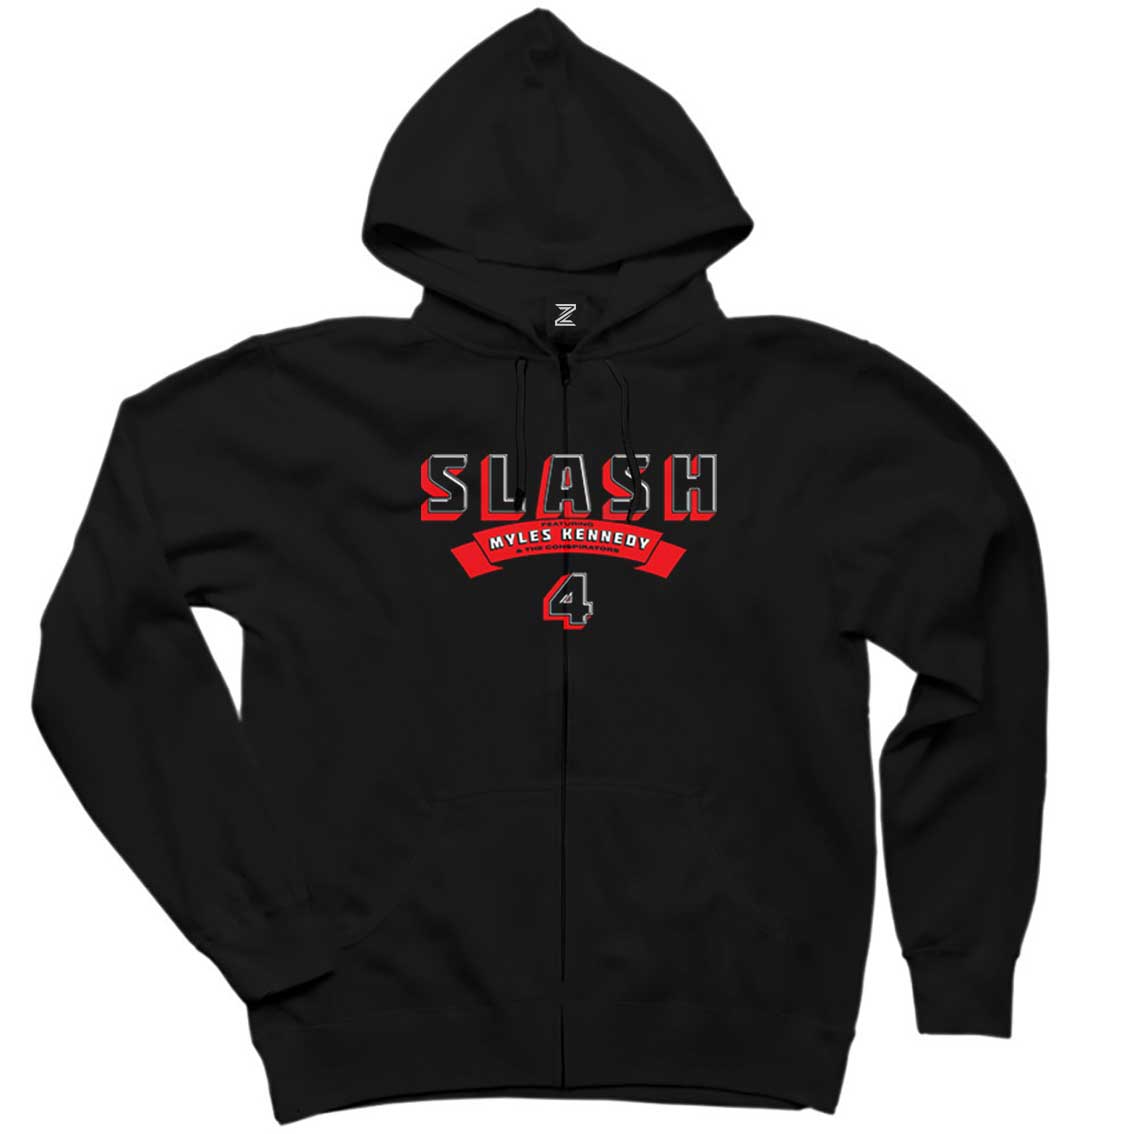 Slash 4 Album Siyah Fermuarlı Kapşonlu Sweatshirt